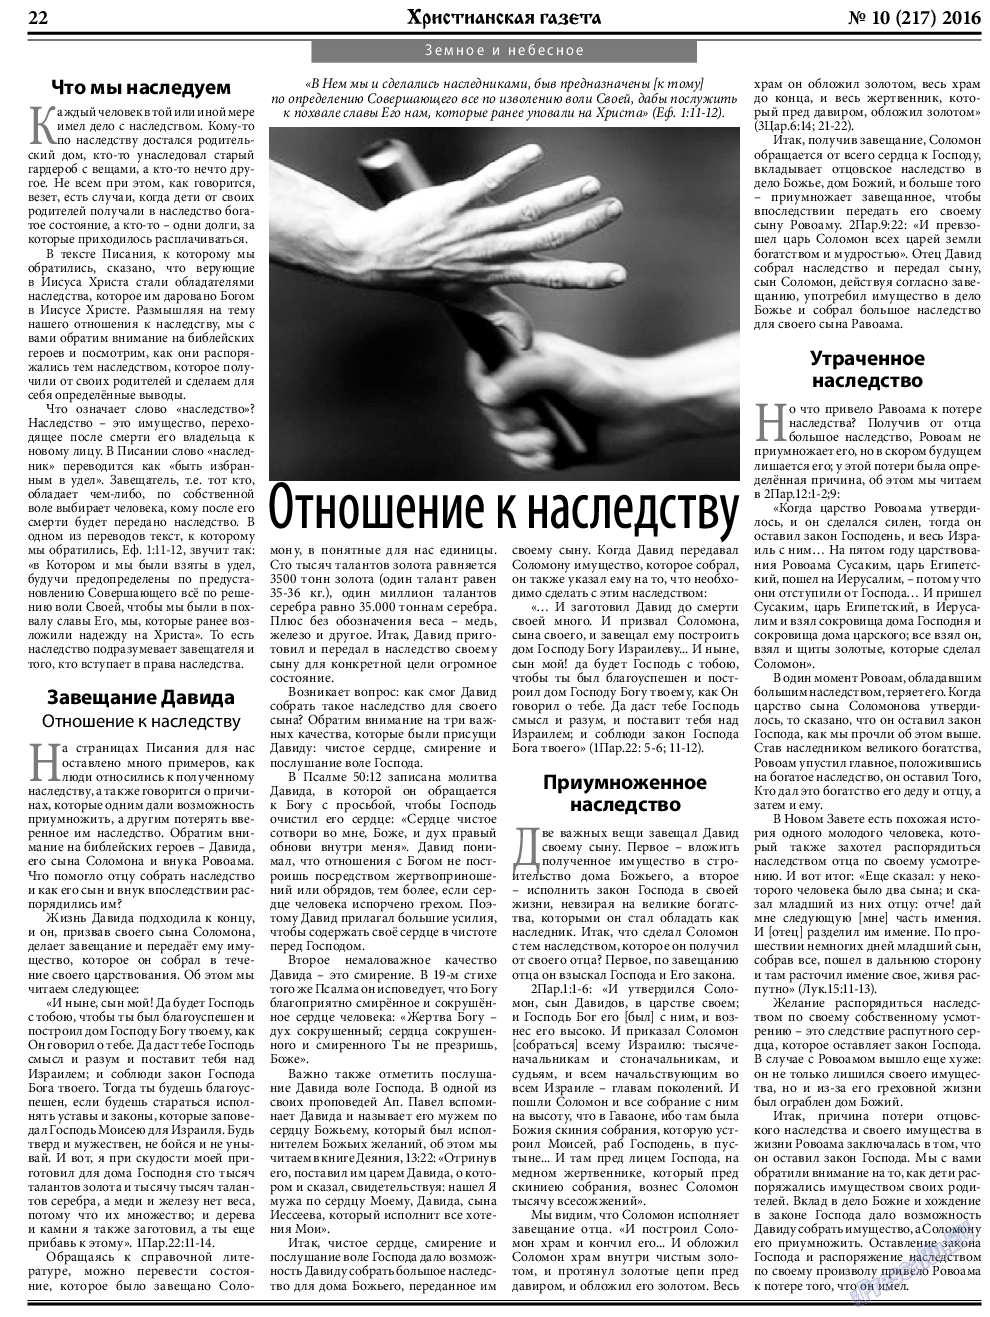 Христианская газета, газета. 2016 №10 стр.30